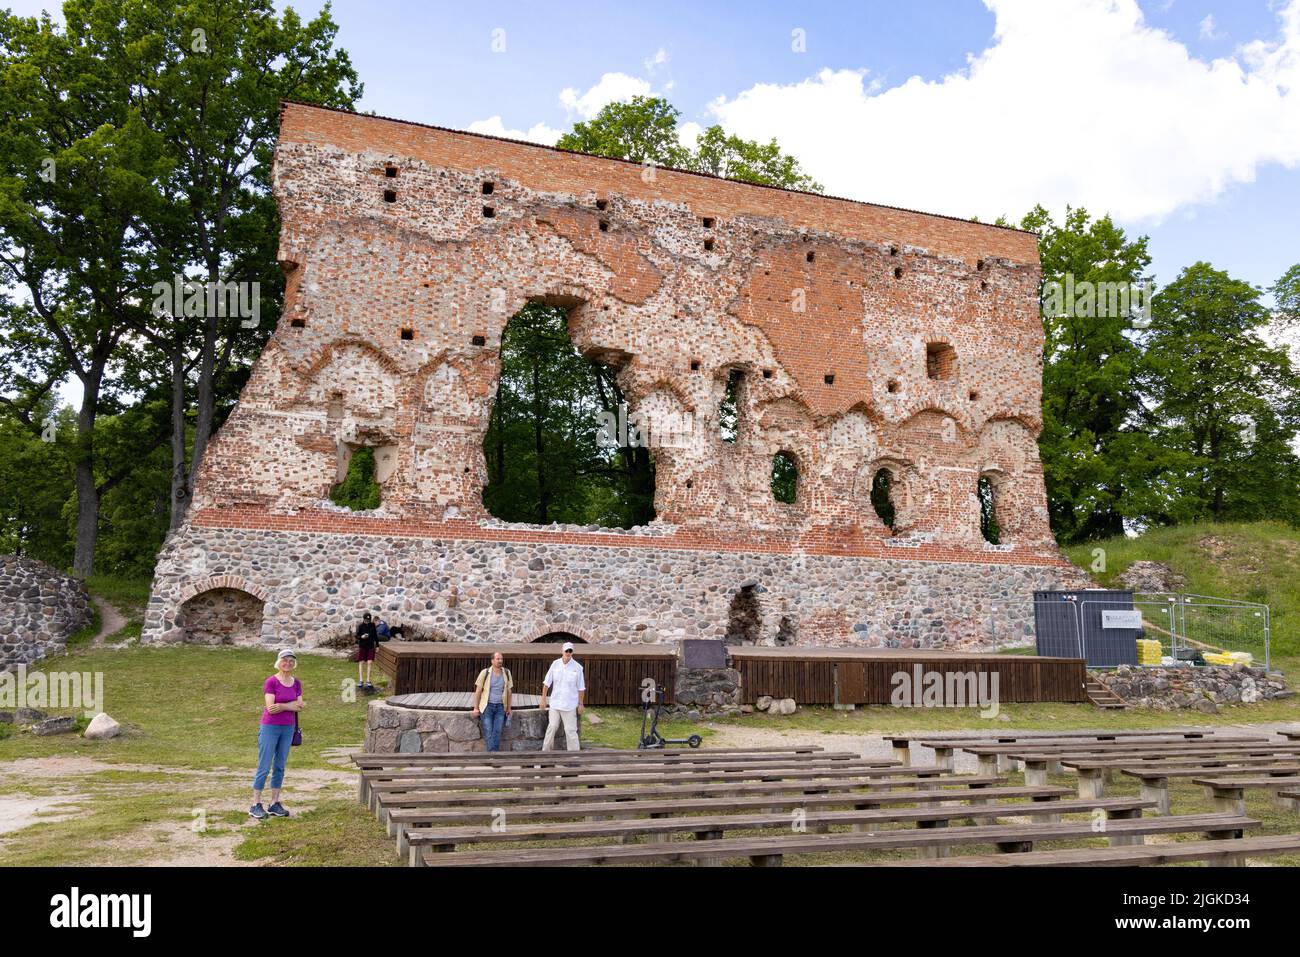 Turisti al Castello di Viljandi, le rovine di un castello del 13th secolo ora un'attrazione turistica, Viljandi, Estonia Stati baltici, Europa Foto Stock